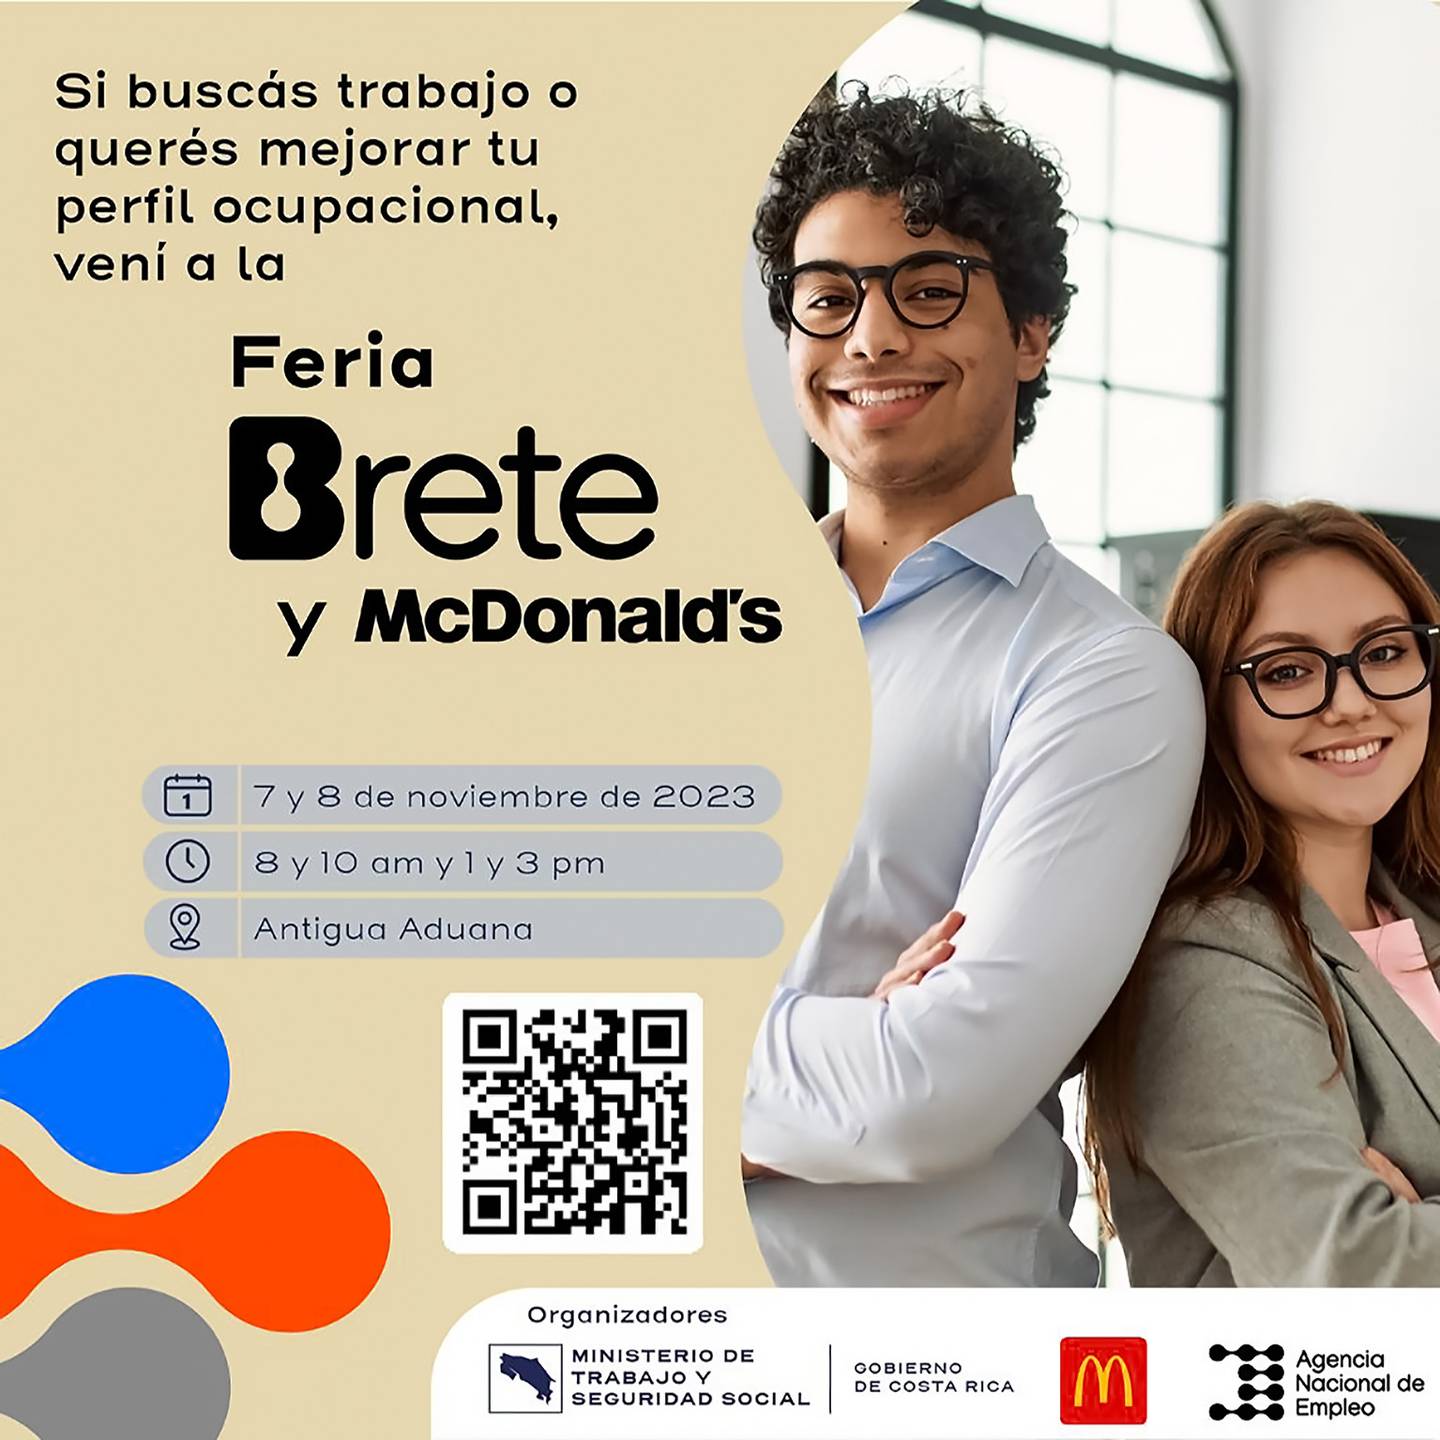 Entre el martes 7 y el miércoles 8 de noviembre se realiza virtualmente la Feria Brete GAM (Gran Área Metropolitana) que es organizada por el Ministerio de Trabajo y McDonald’s.